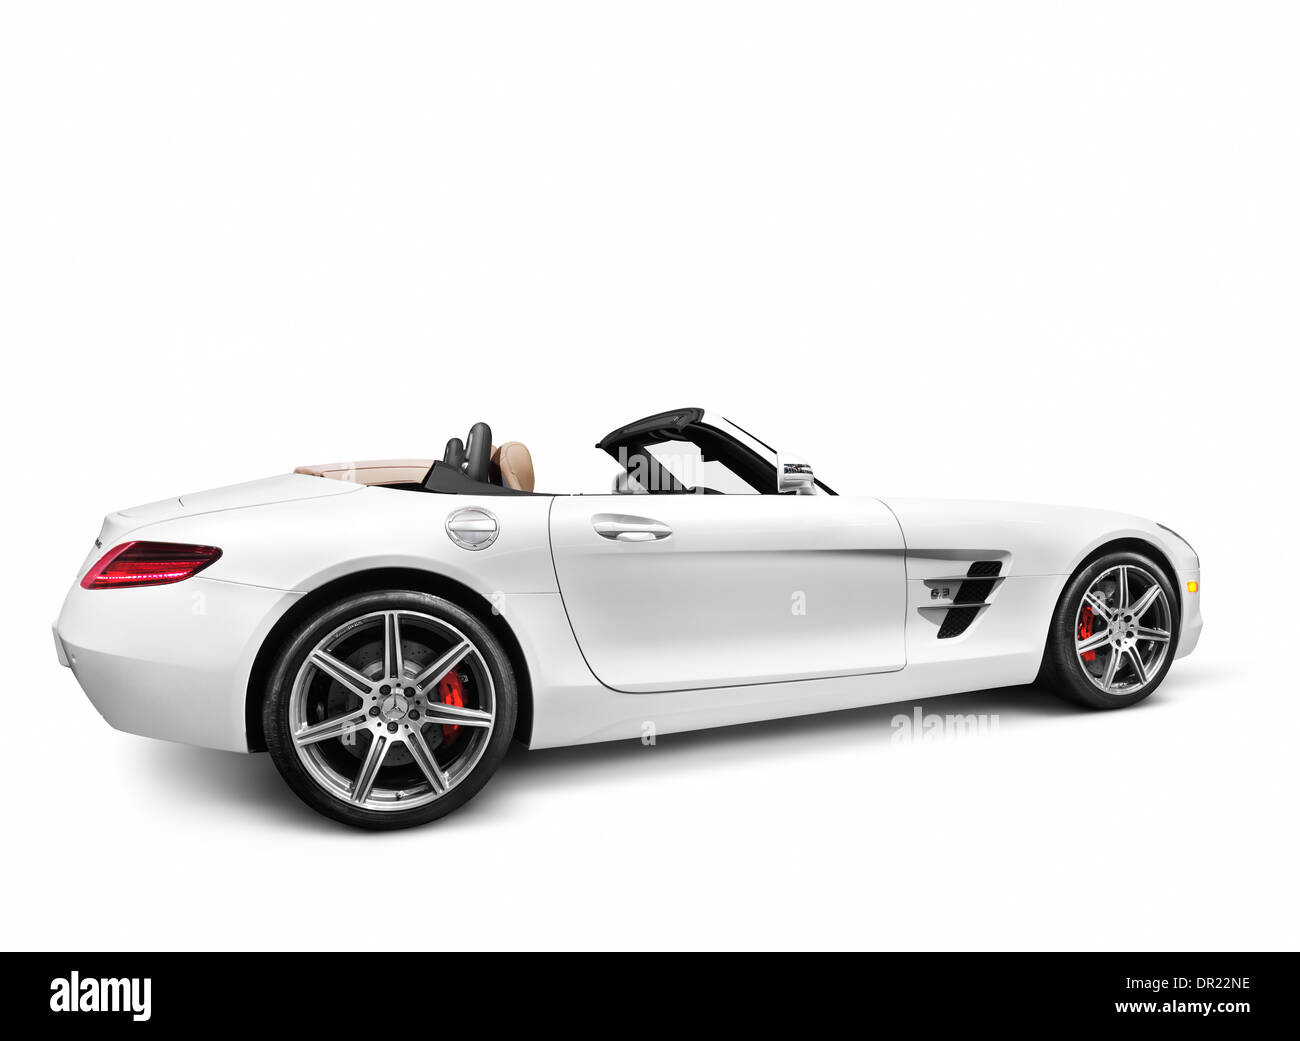 Führerschein und Ausdrucke beim Mercedes-Benz SLS AMG GT Roadster MaximImages.com - 2012, Seitenansicht isoliert mit Beschneidungspfad auf weißem Hintergrund Stockfoto